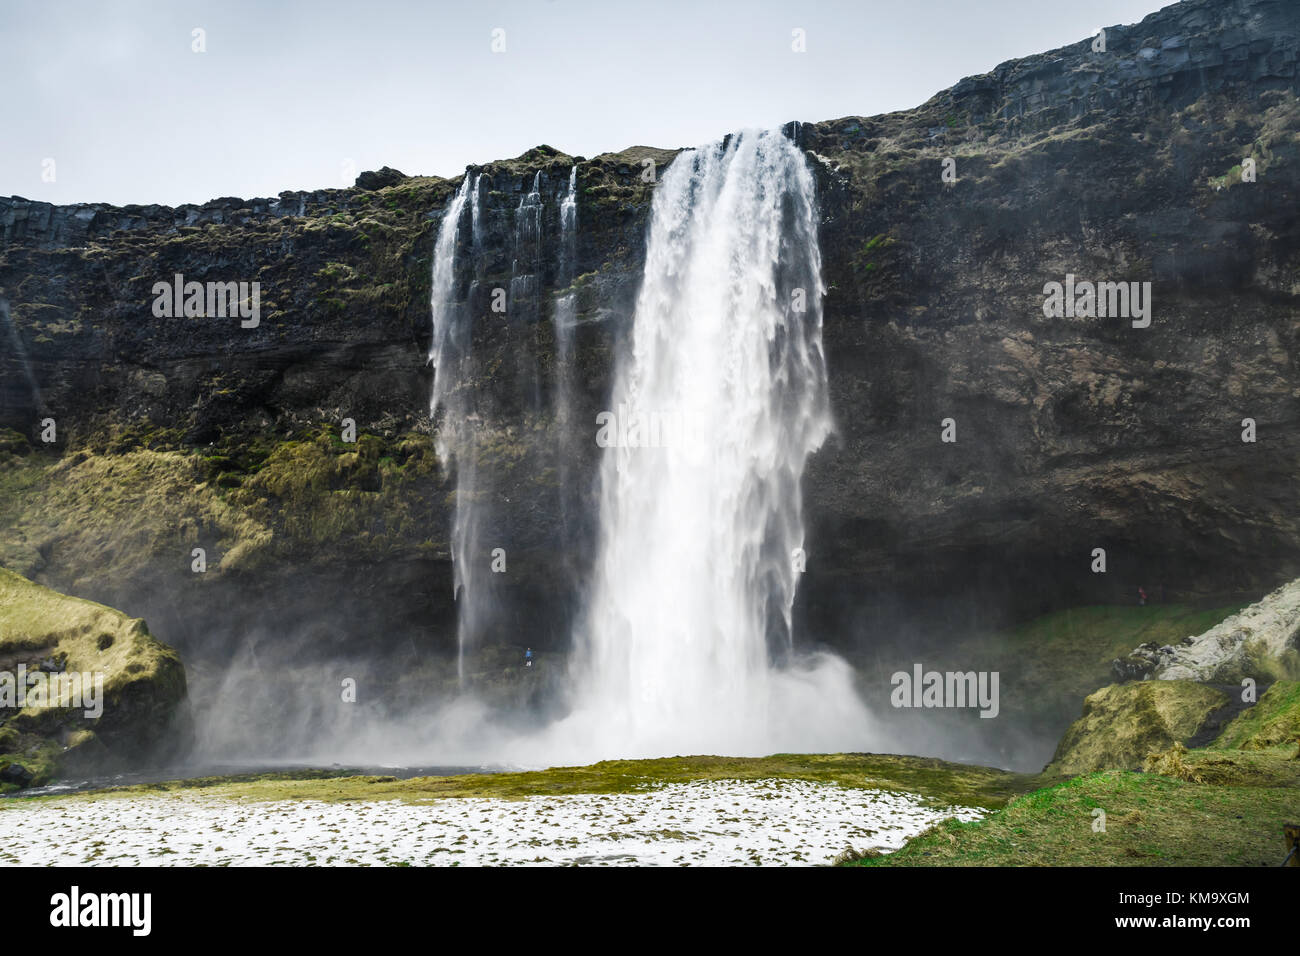 Le paysage sauvage de seljalandfoss cascade, l'un des plus populaires repère naturel de la nature islandaise Banque D'Images